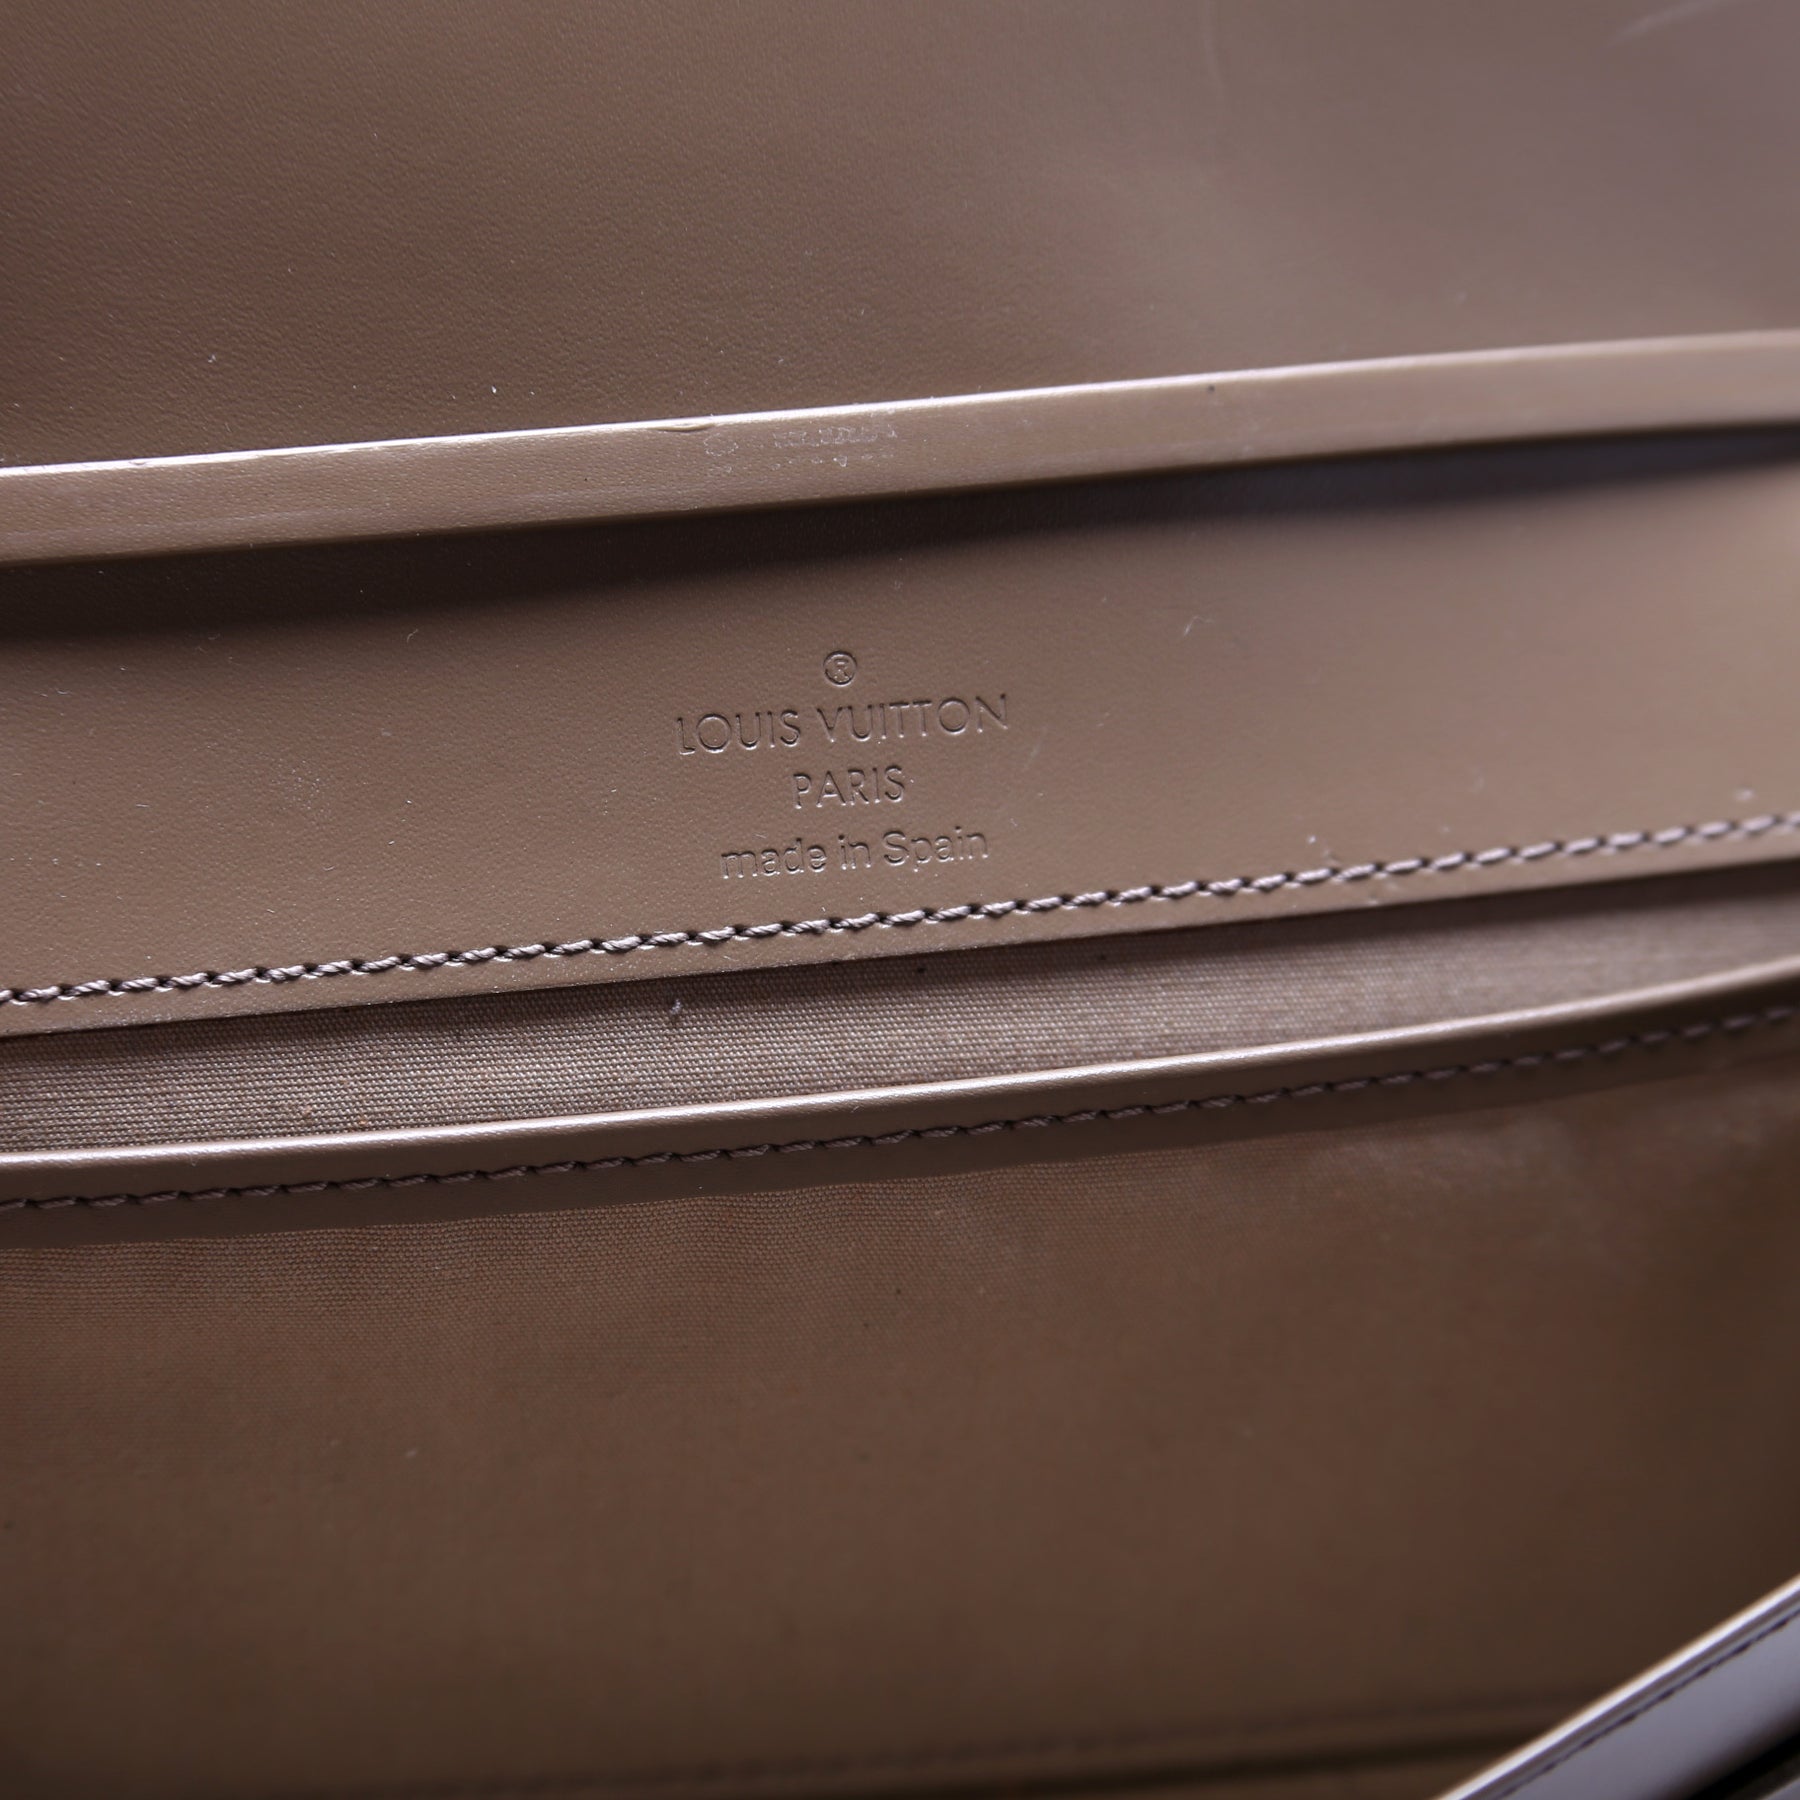 Honfleur Clutch Epi – Keeks Designer Handbags